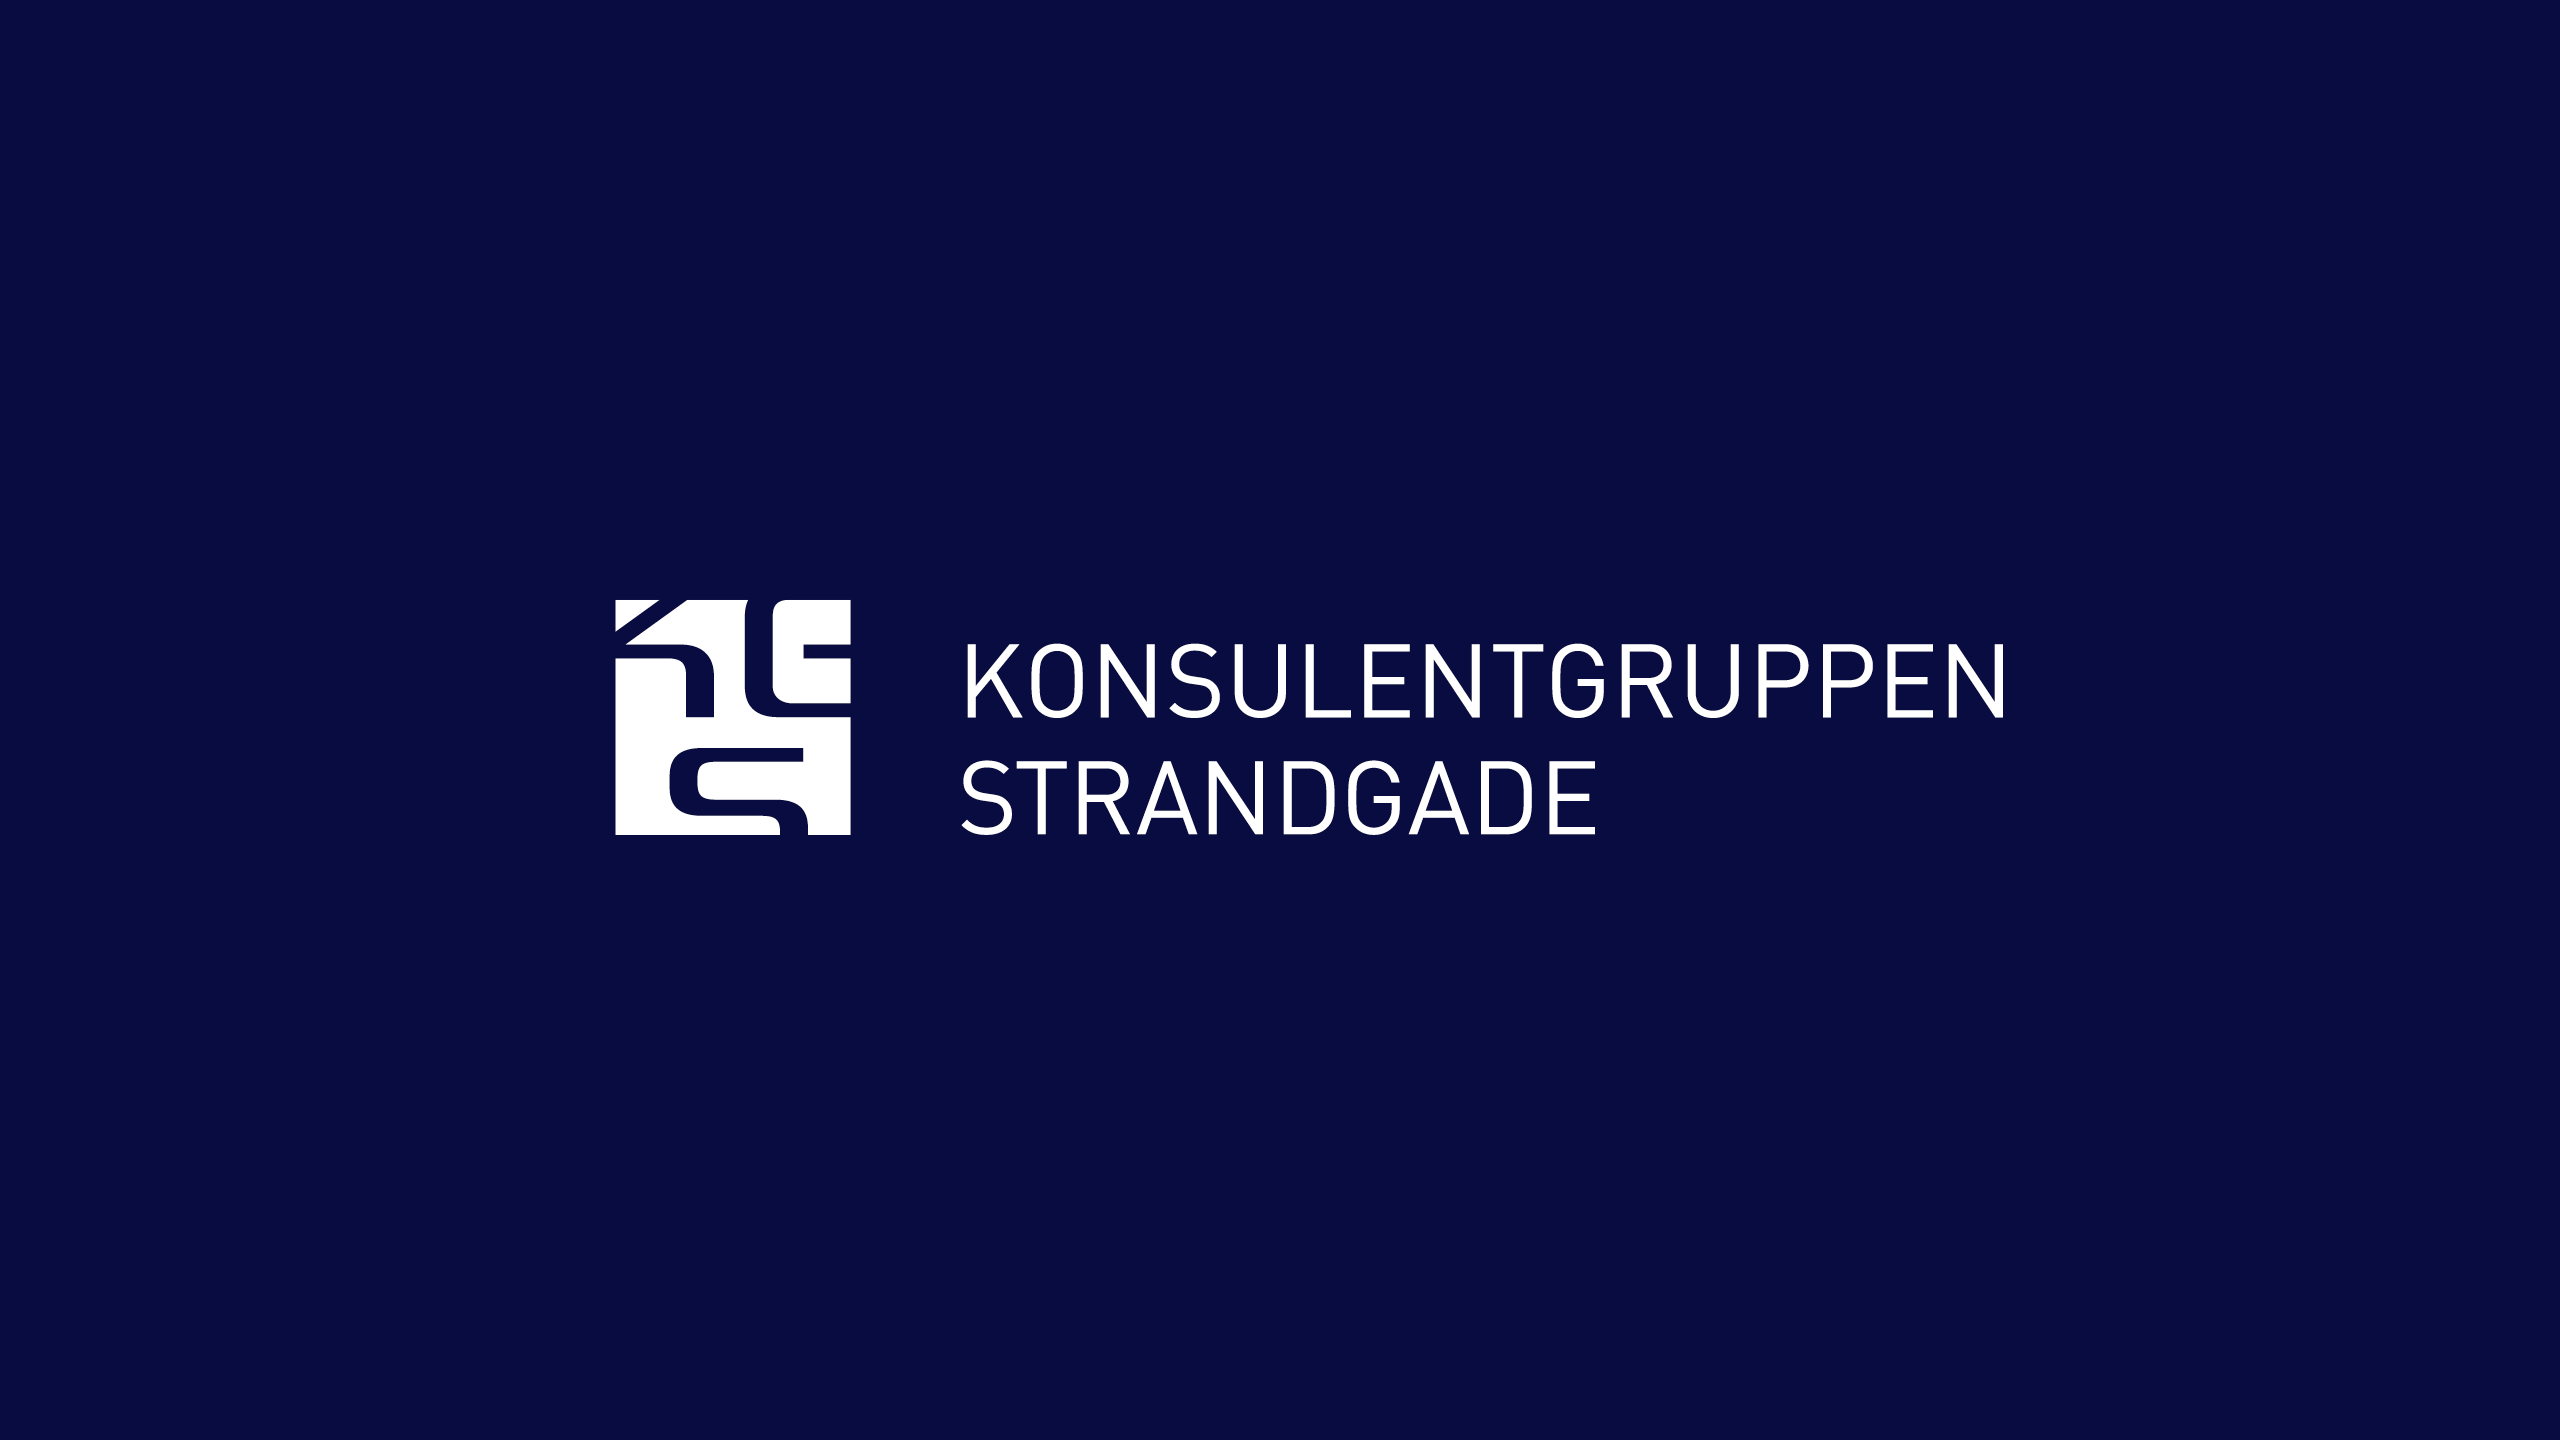 Logodesign for Konsulentgruppen Strandgade